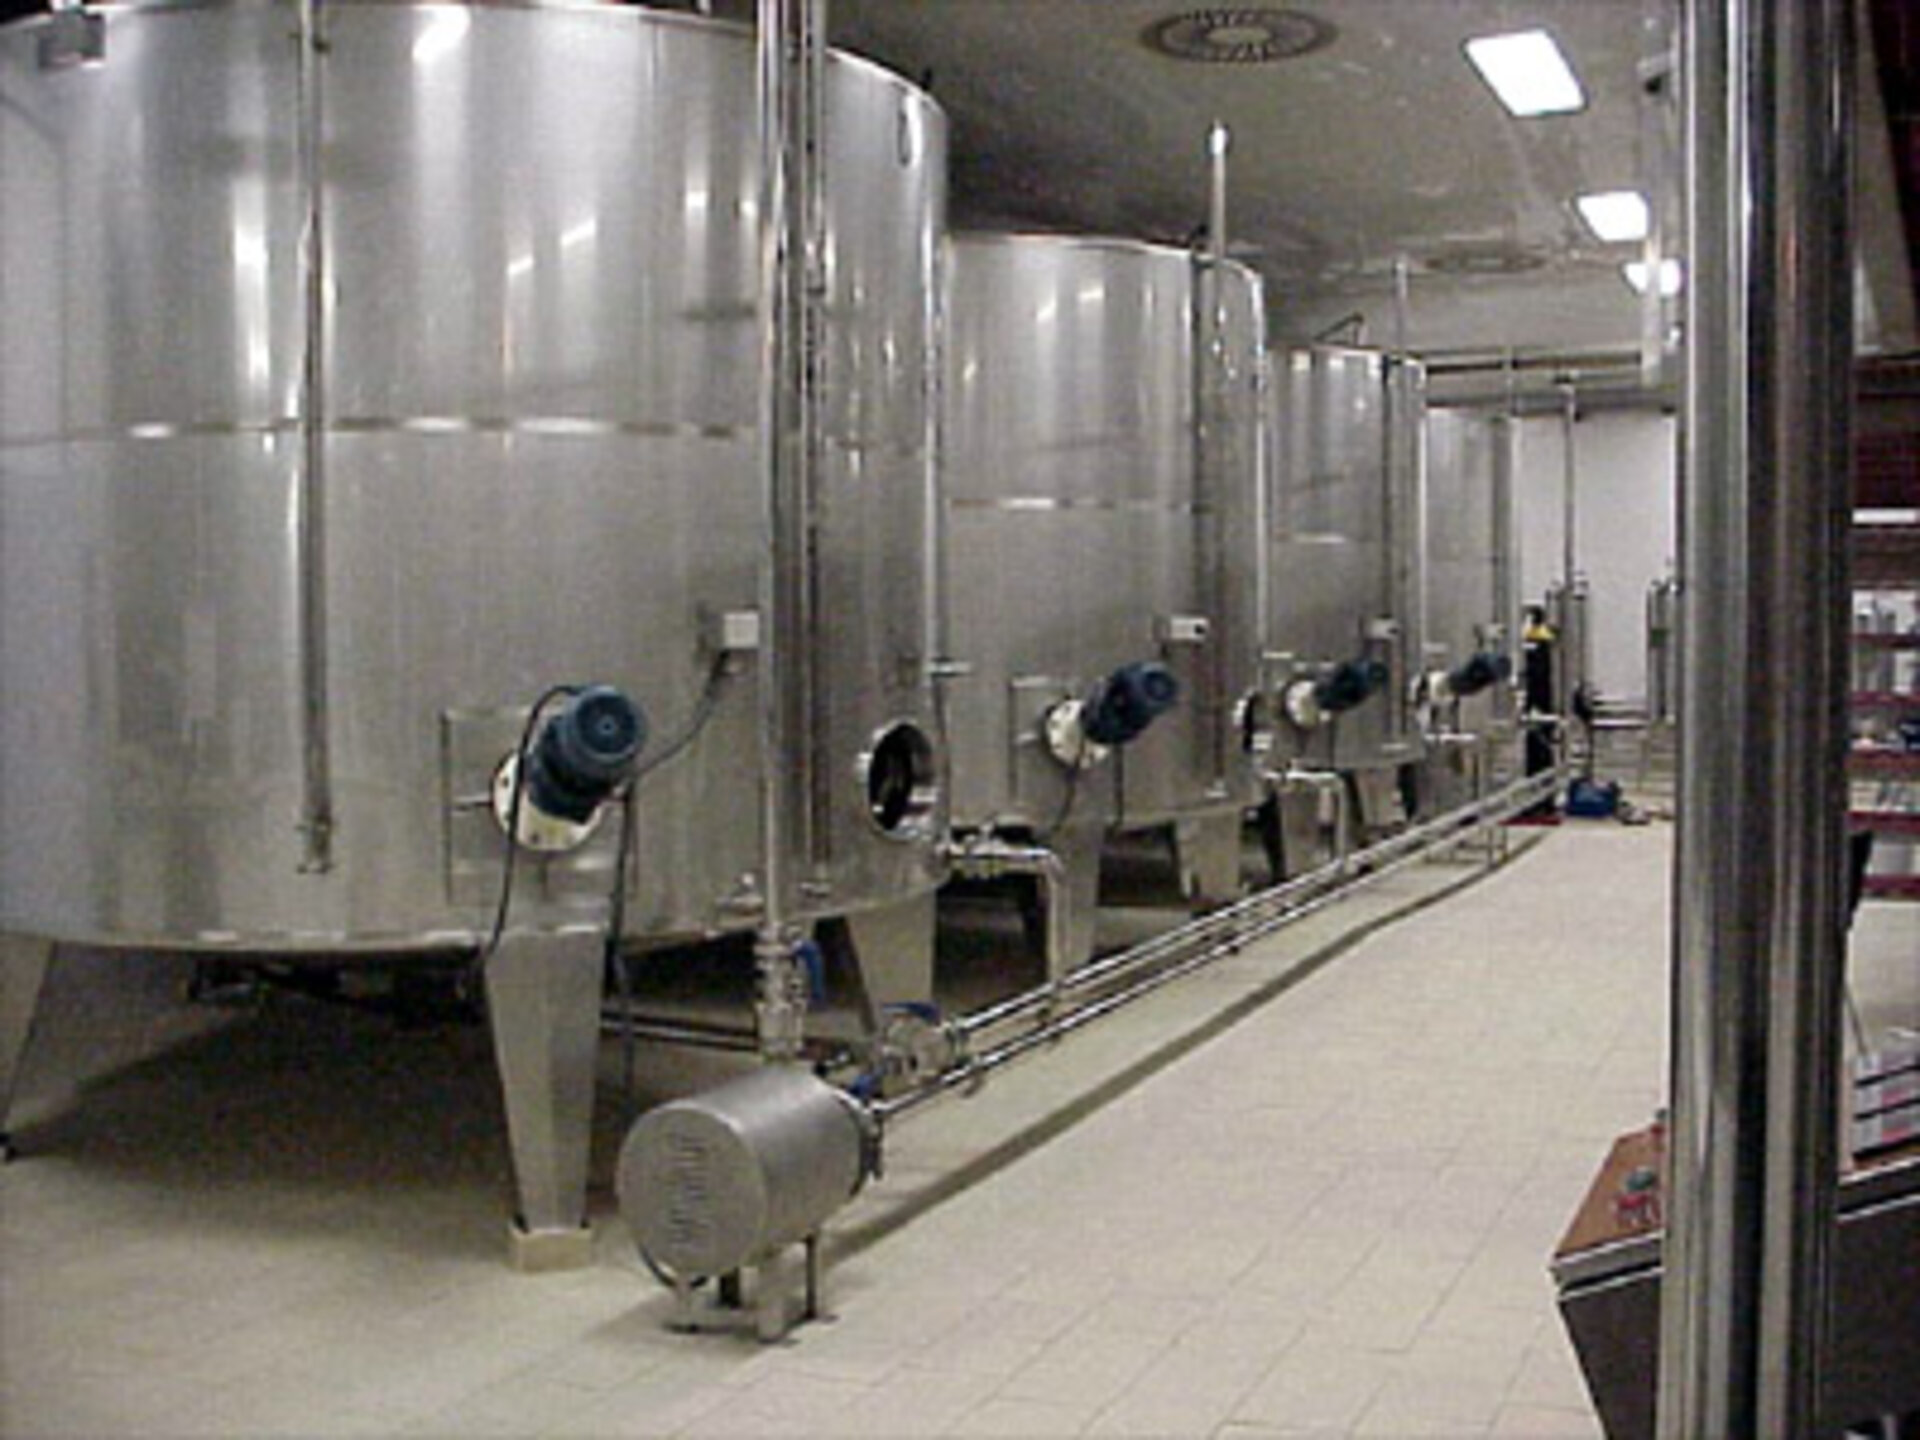 Fermentation vats for the first fermentation process at Freixenet.